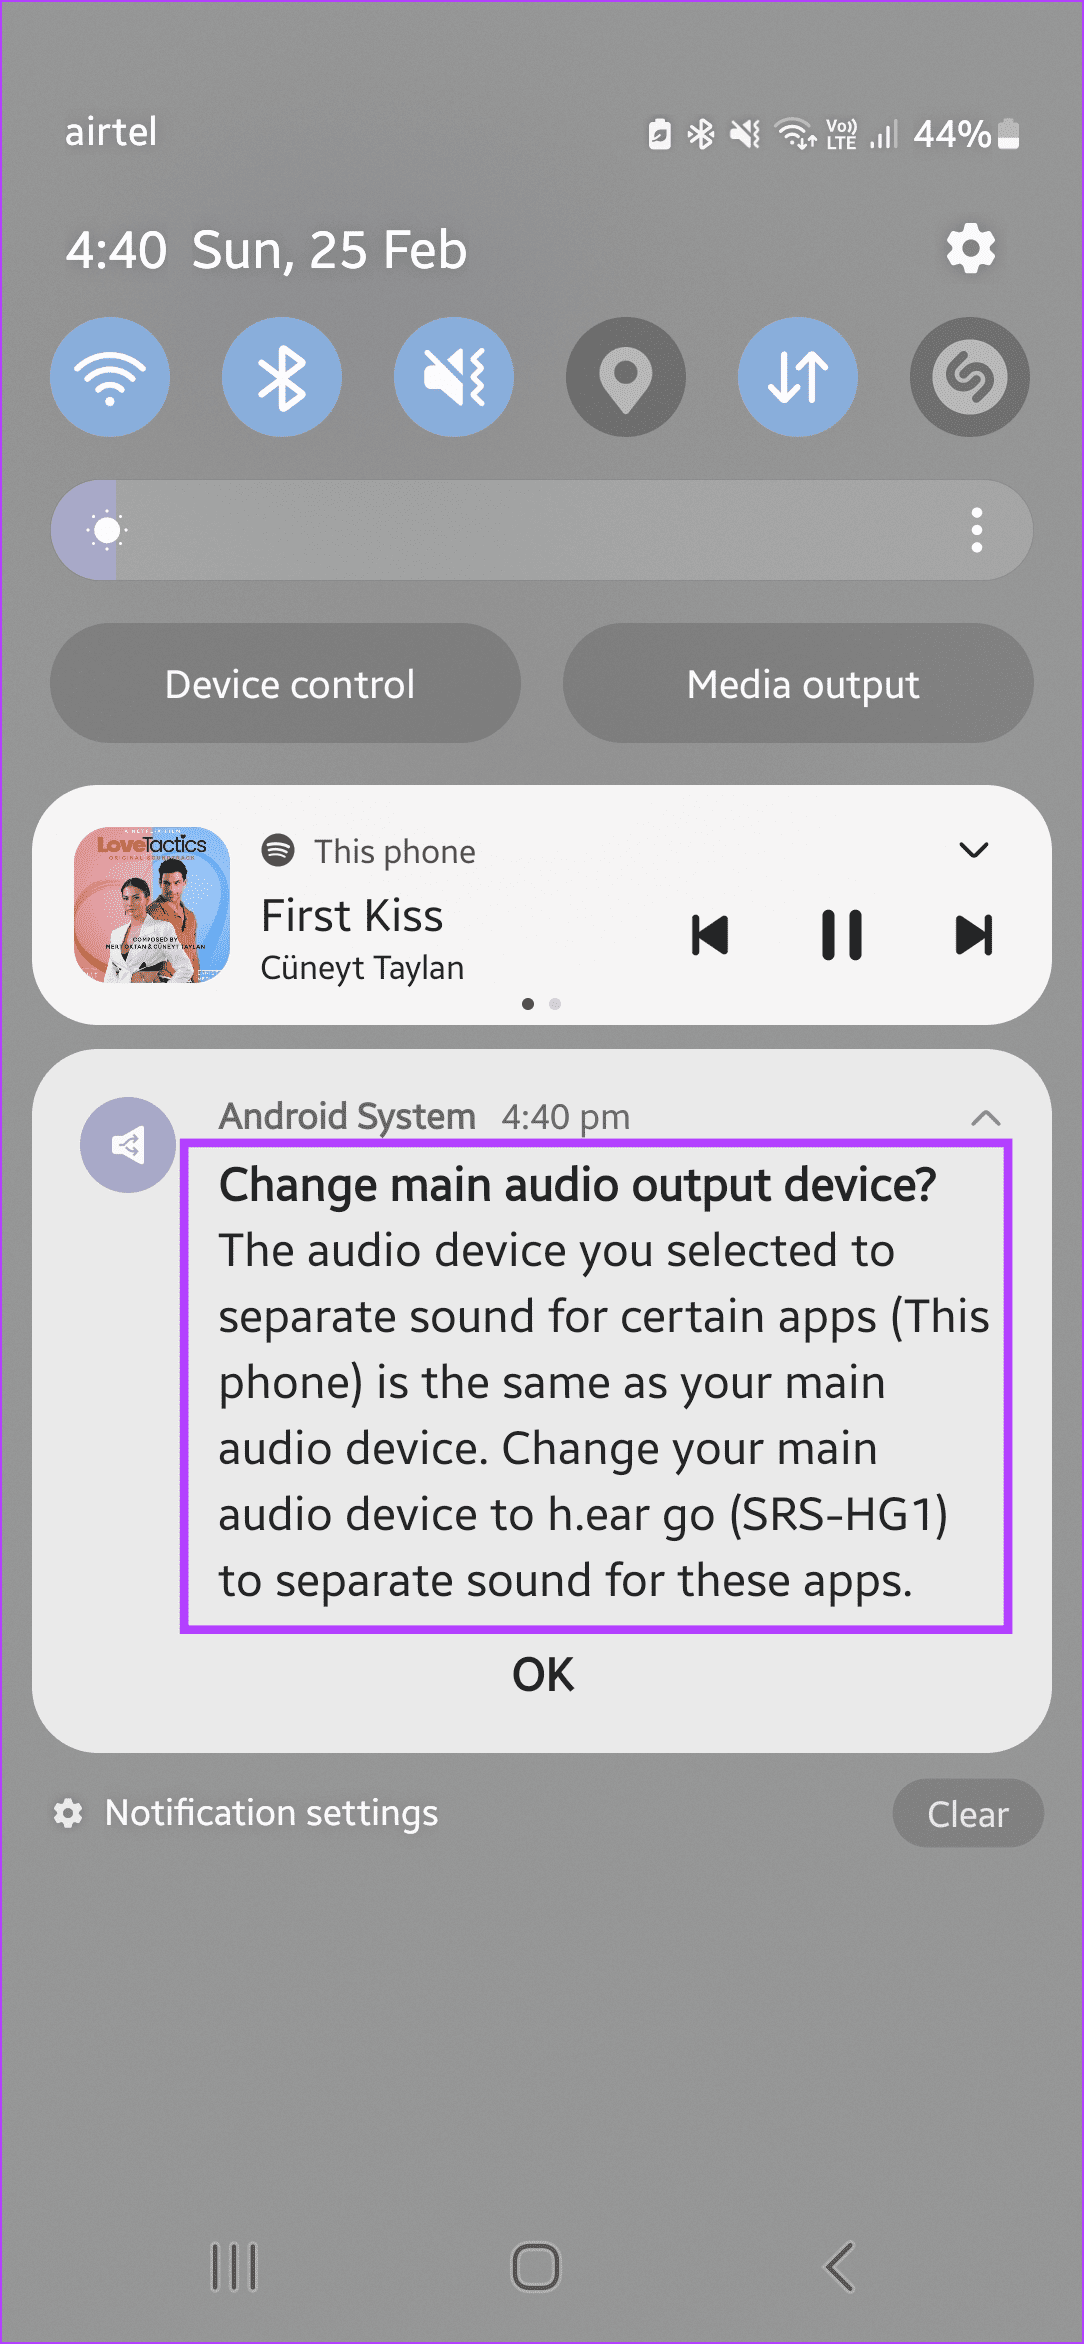 ¿Qué es el sonido de la aplicación separada de Samsung y cómo usarlo?